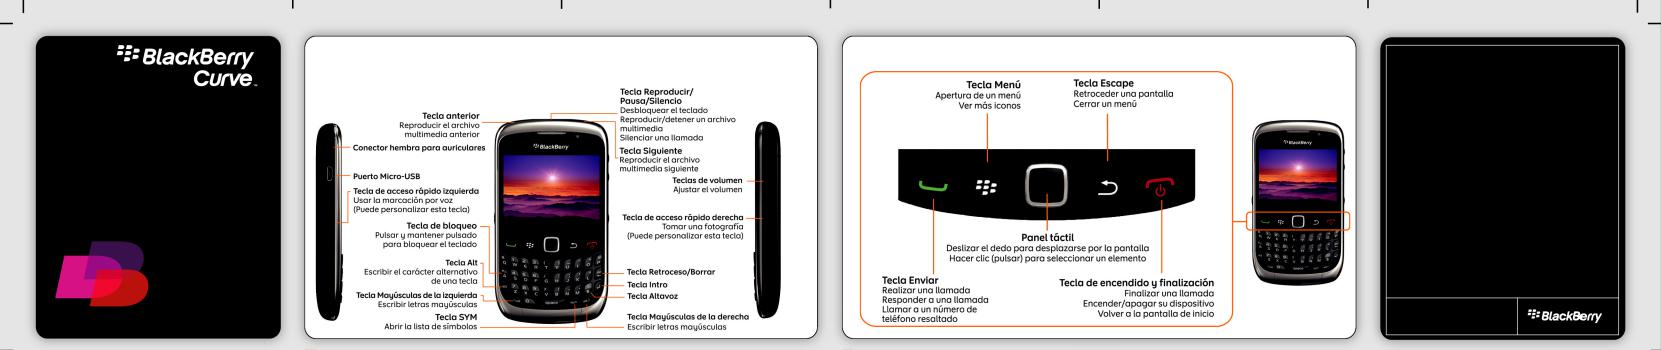 BlackBerry Curve 9330, Curve 9300 User Manual